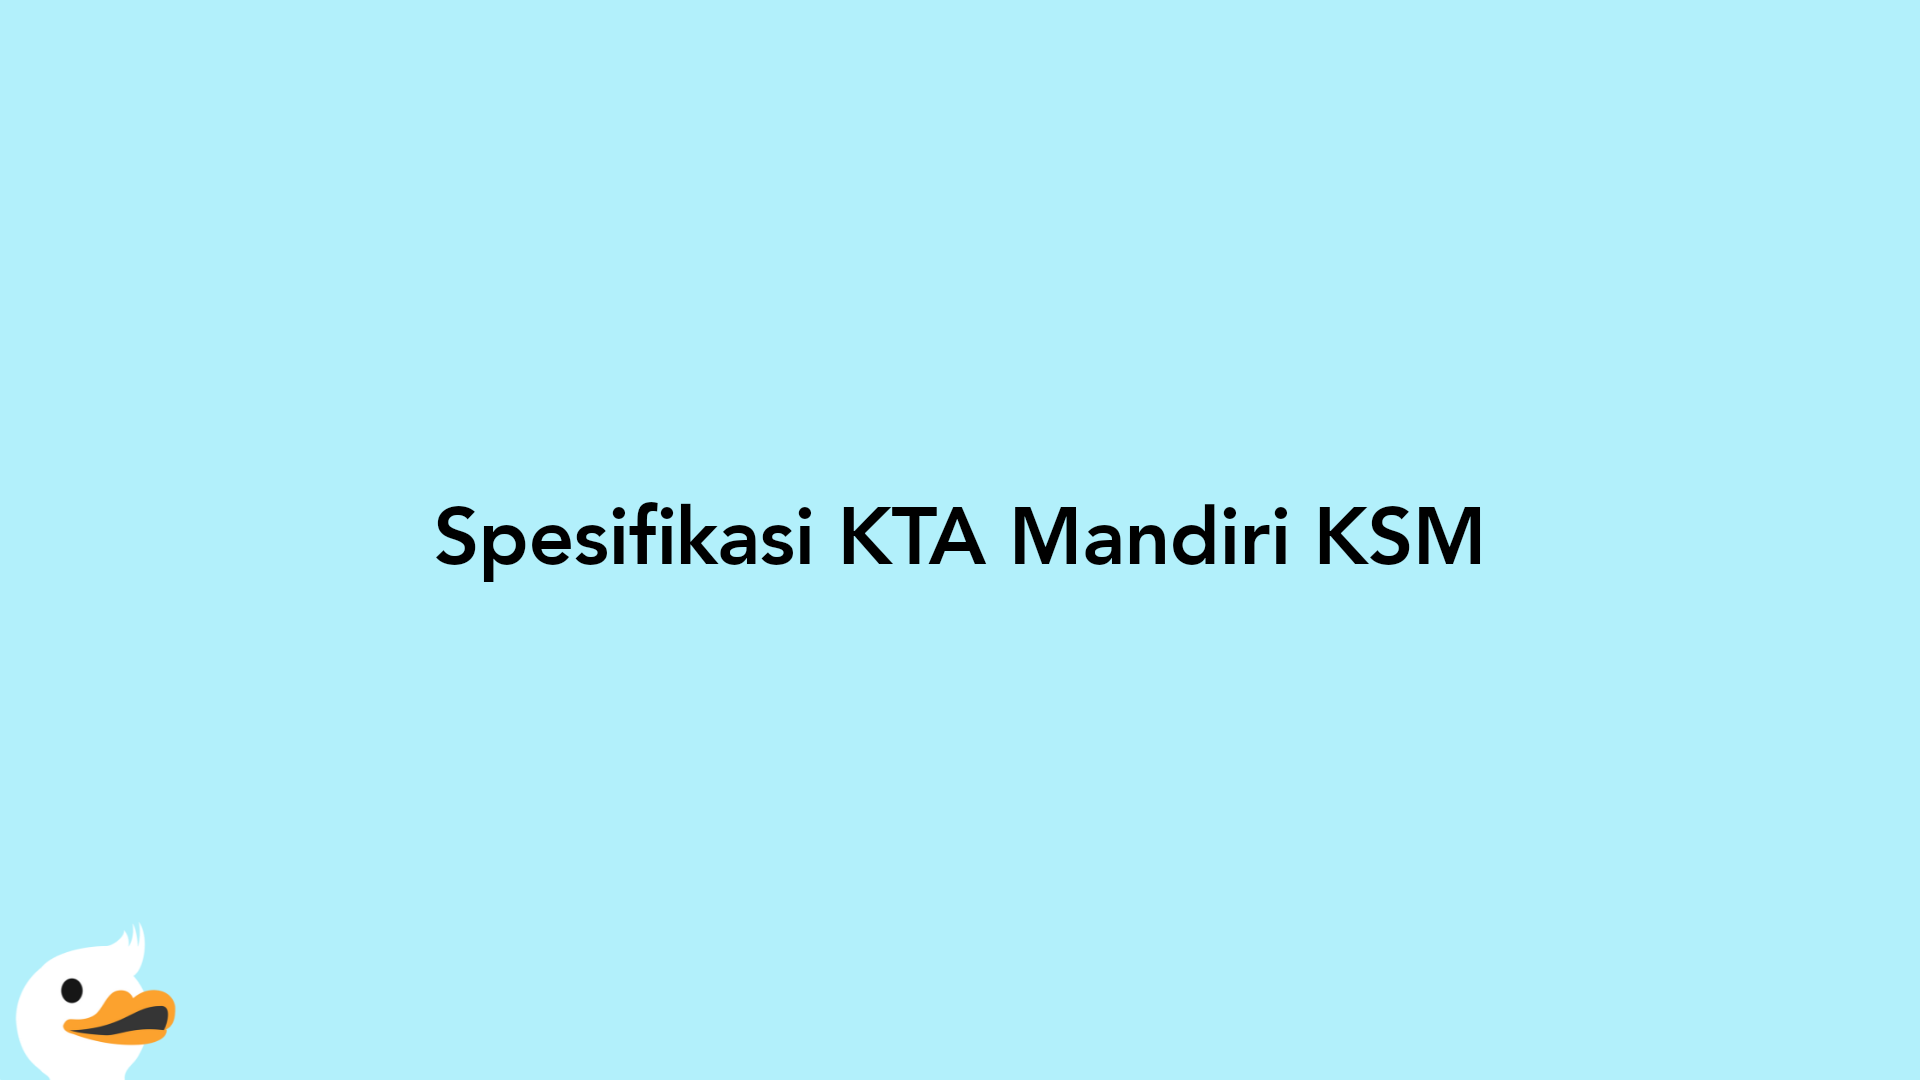 Spesifikasi KTA Mandiri KSM